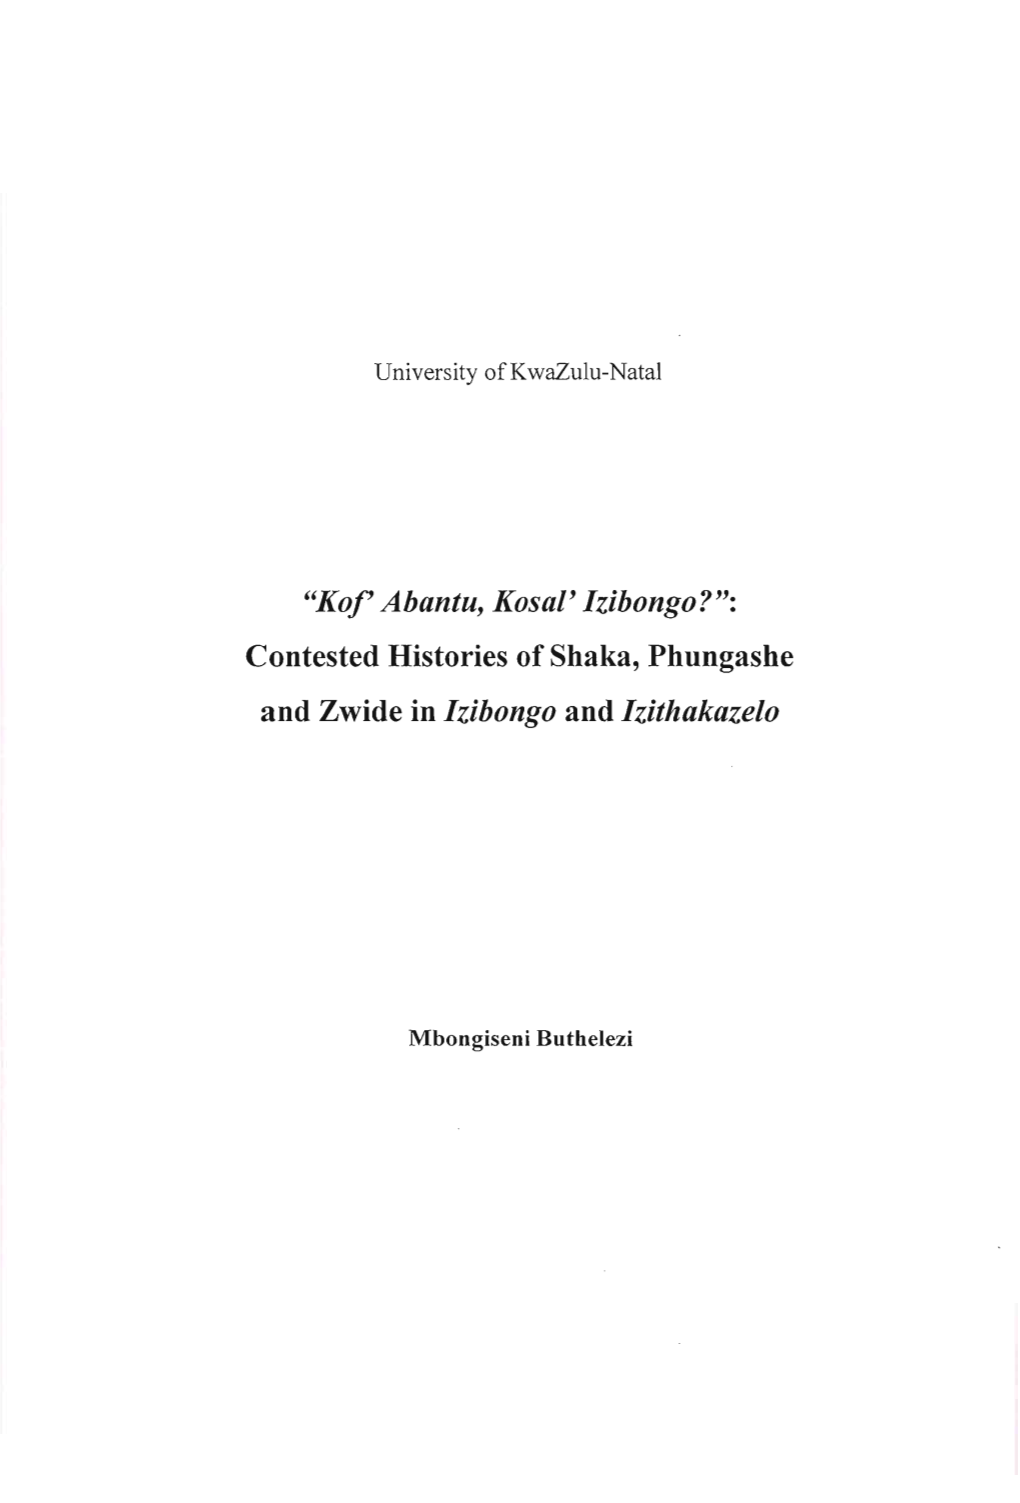 "Kof' Abantu, Kosal' Izibongo?": Contested Histories of Shaka, Phungashe and Zwide in Izibongo and Izithakazelo